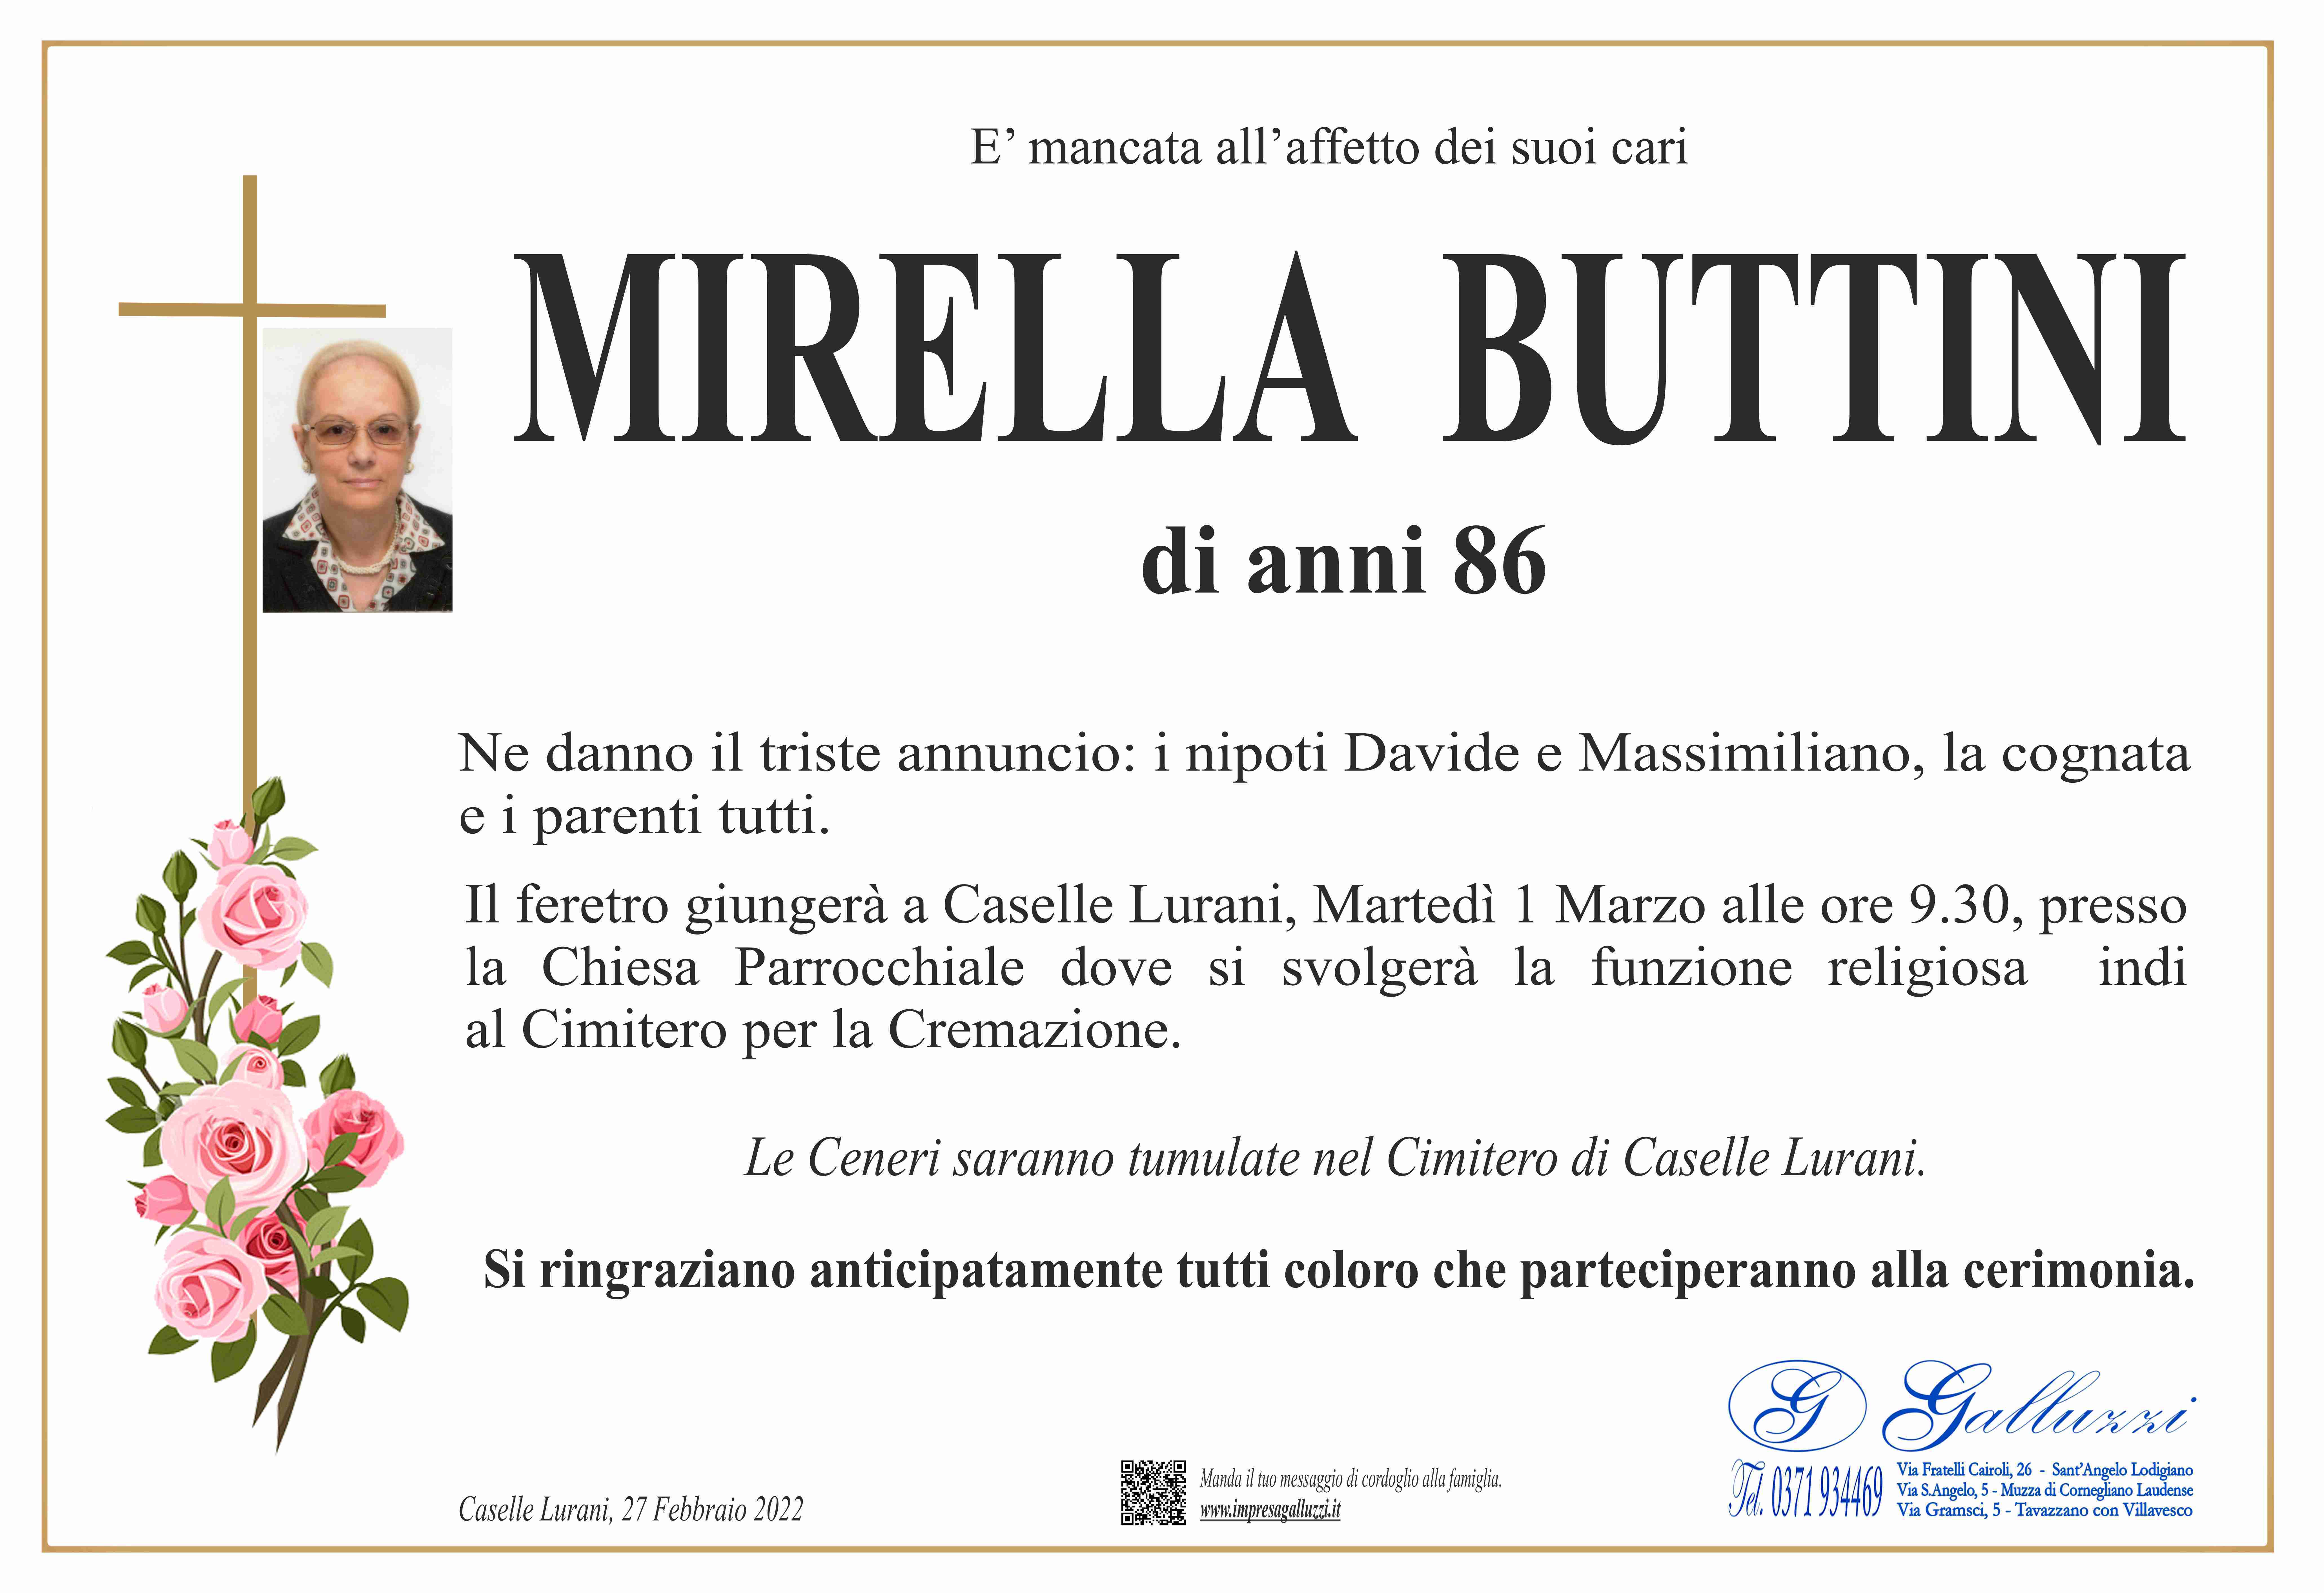 Mirella Buttini